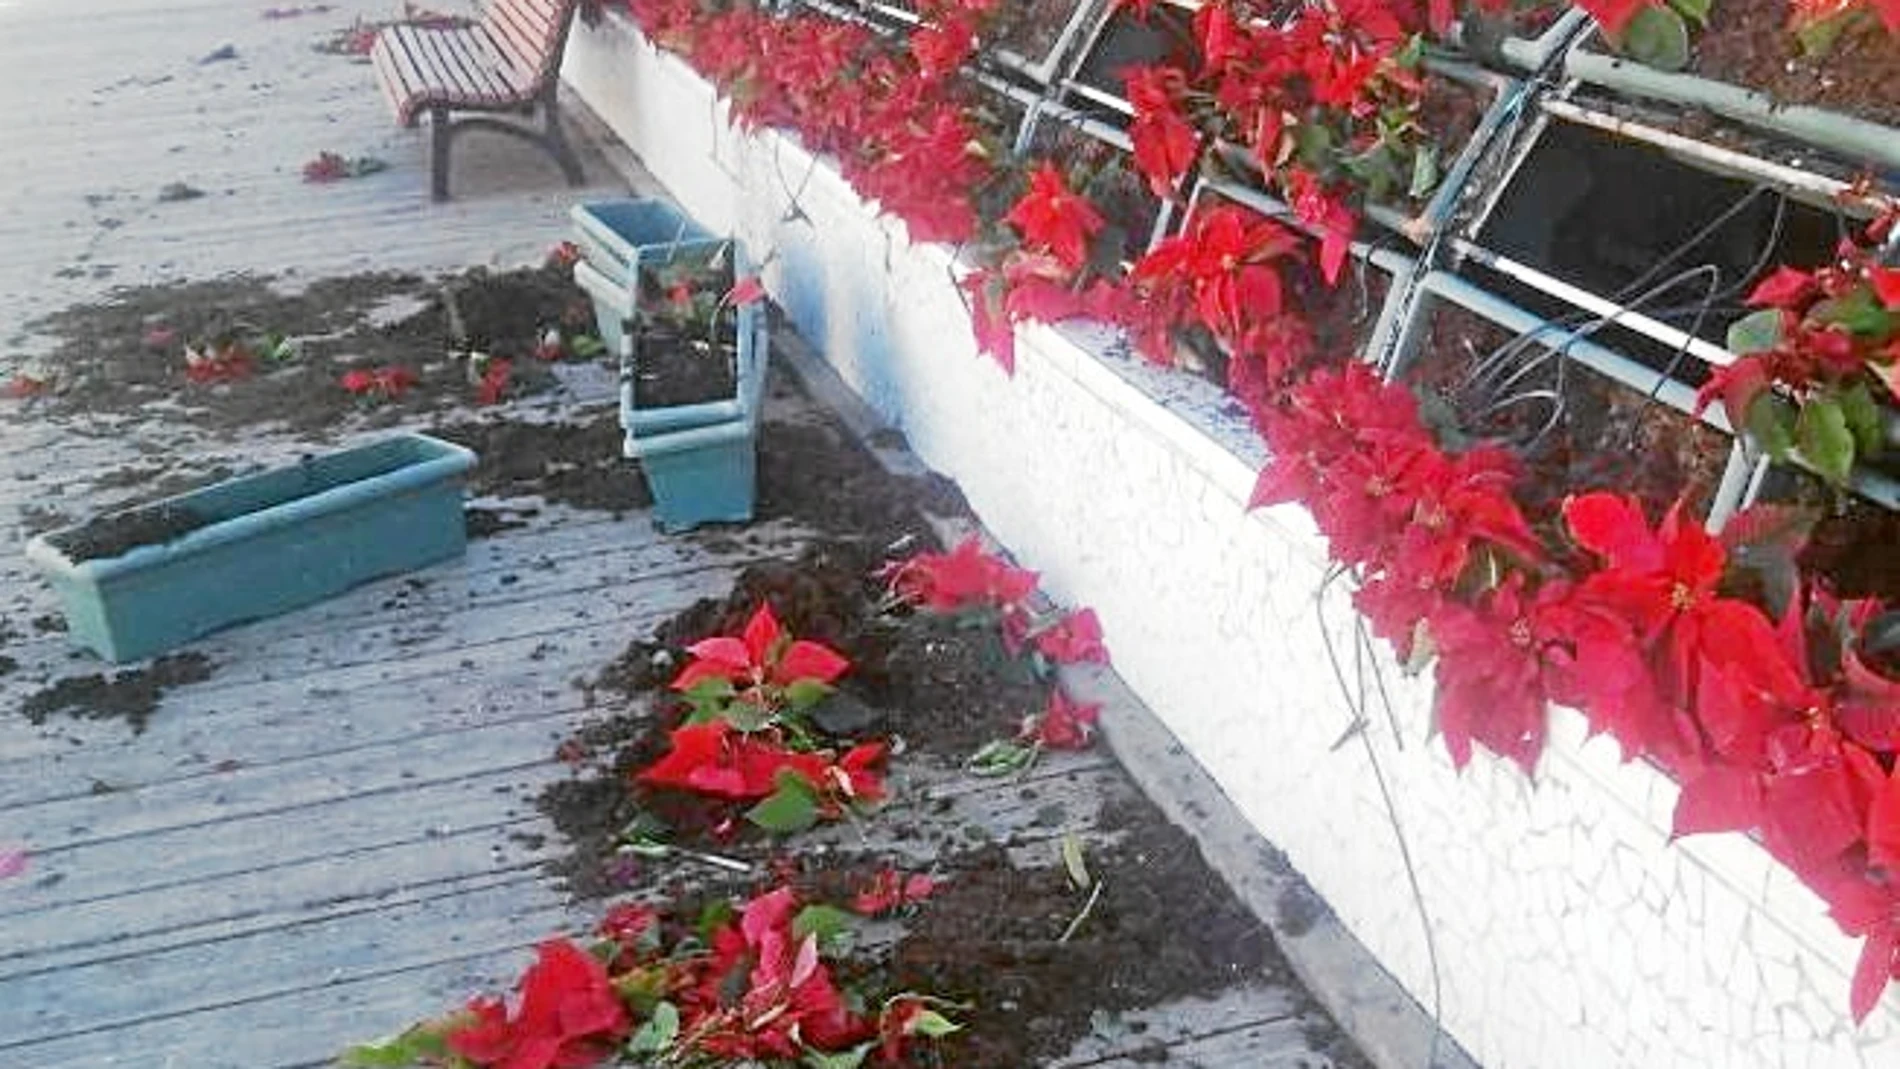 48 jardineras del Puente de las Flores fueron arrancadas